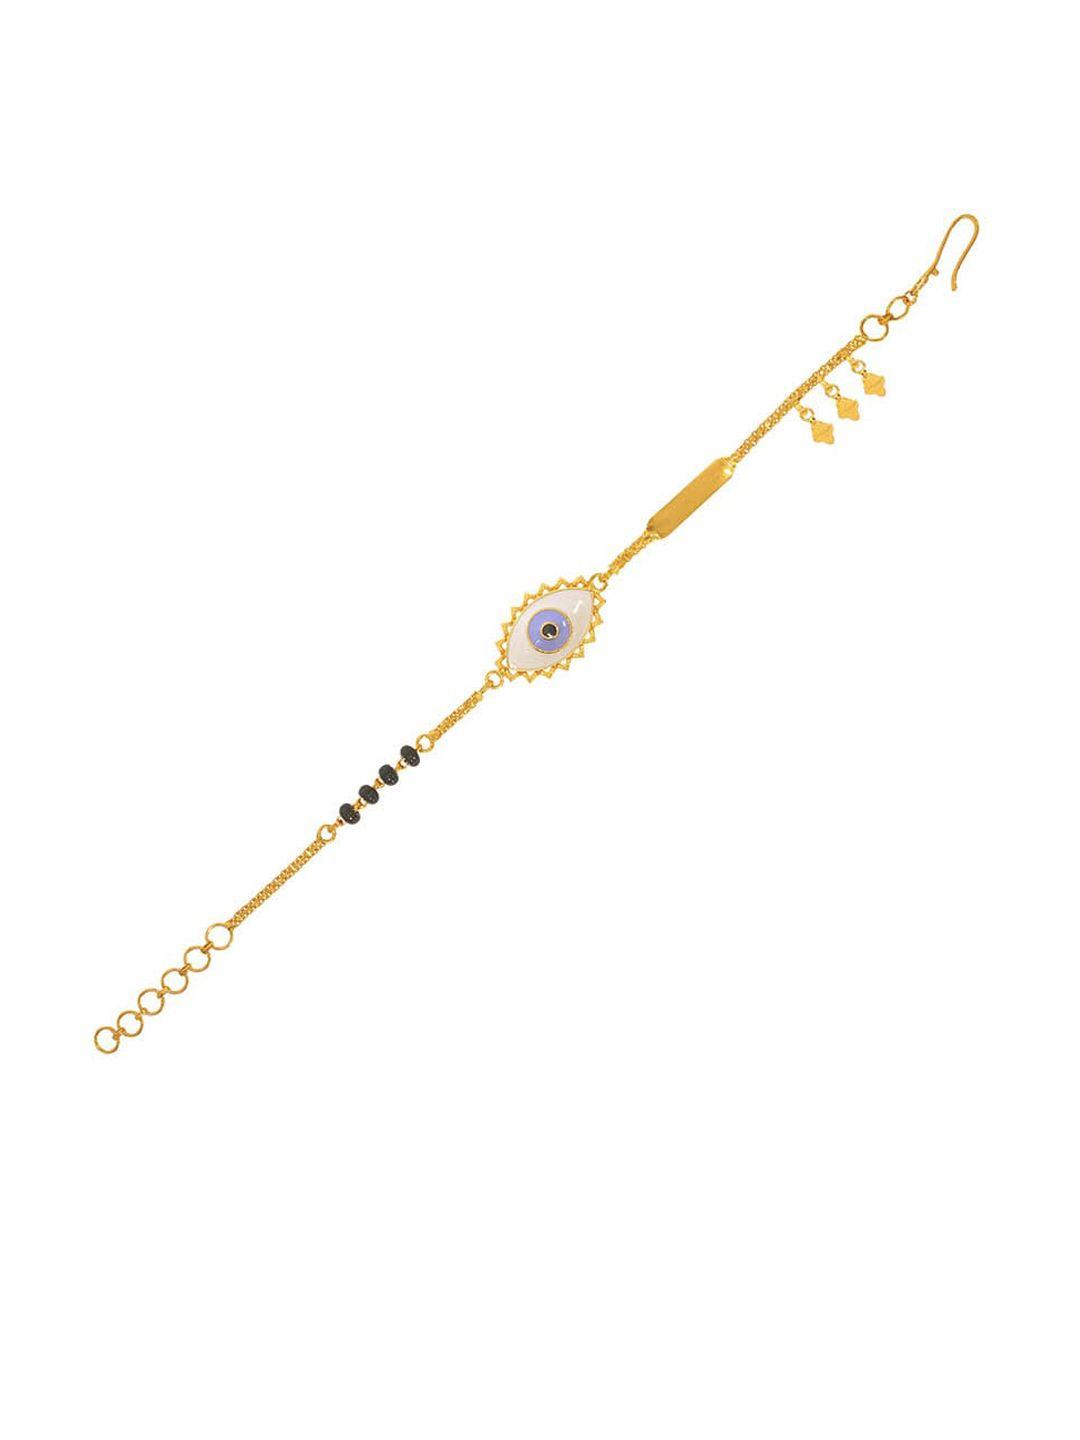 senco 22kt dazzling vision gold bracelet-4.3gm